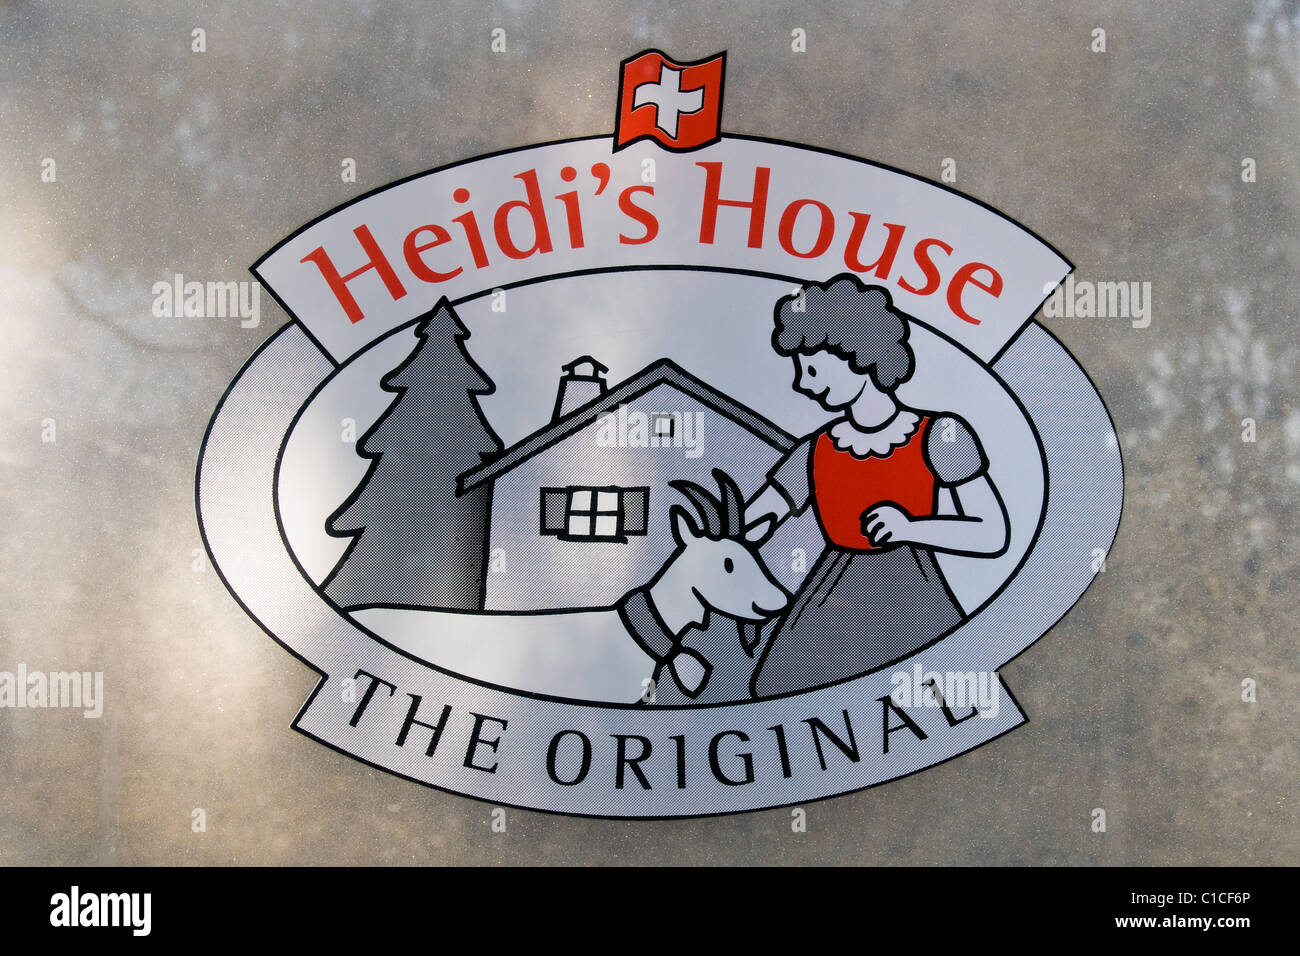 Heidi's house, Maienfeld, Switzerland Stock Photo